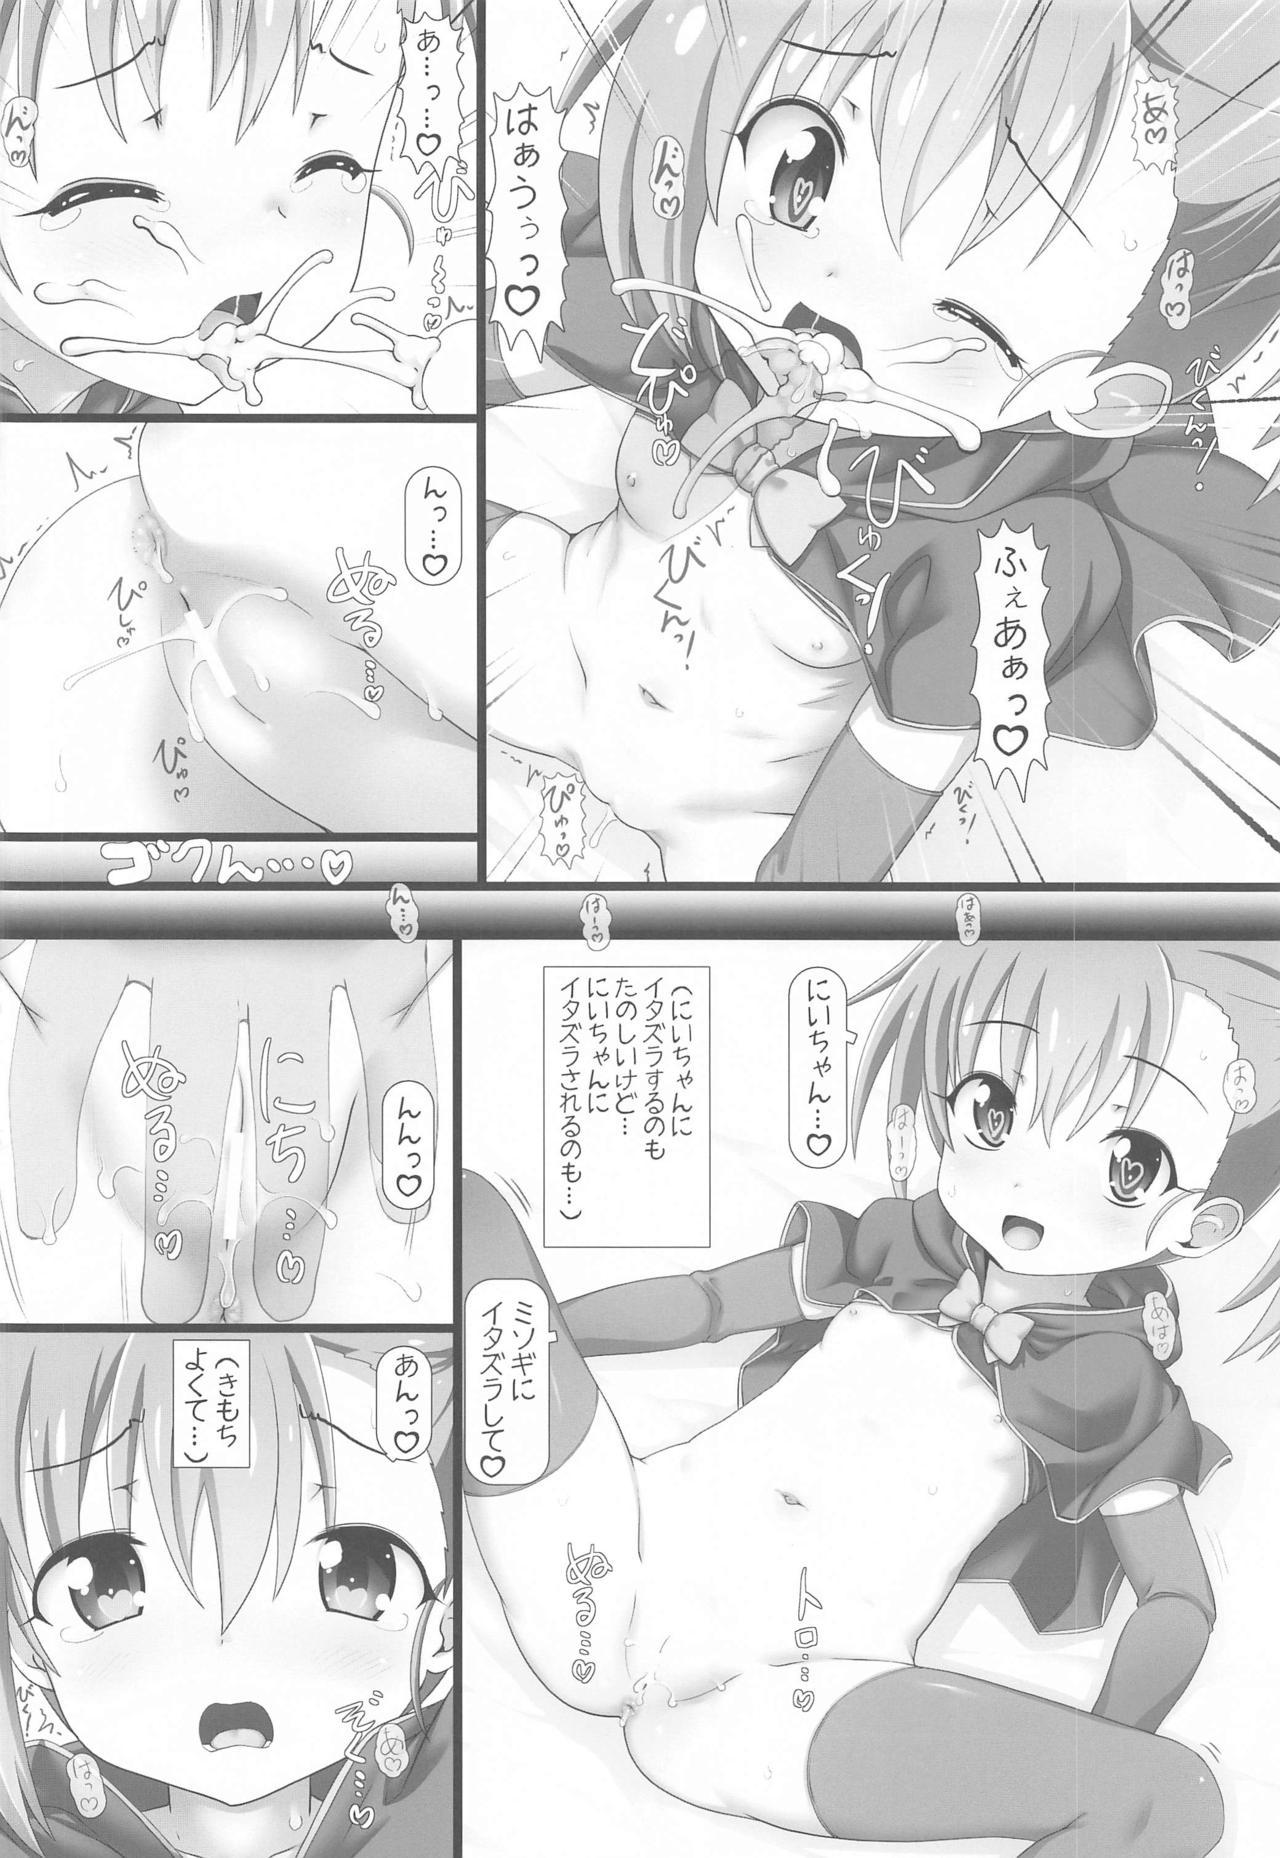 Balls Misogi ni Itazura Shite mo Ii yo - Princess connect Chacal - Page 7